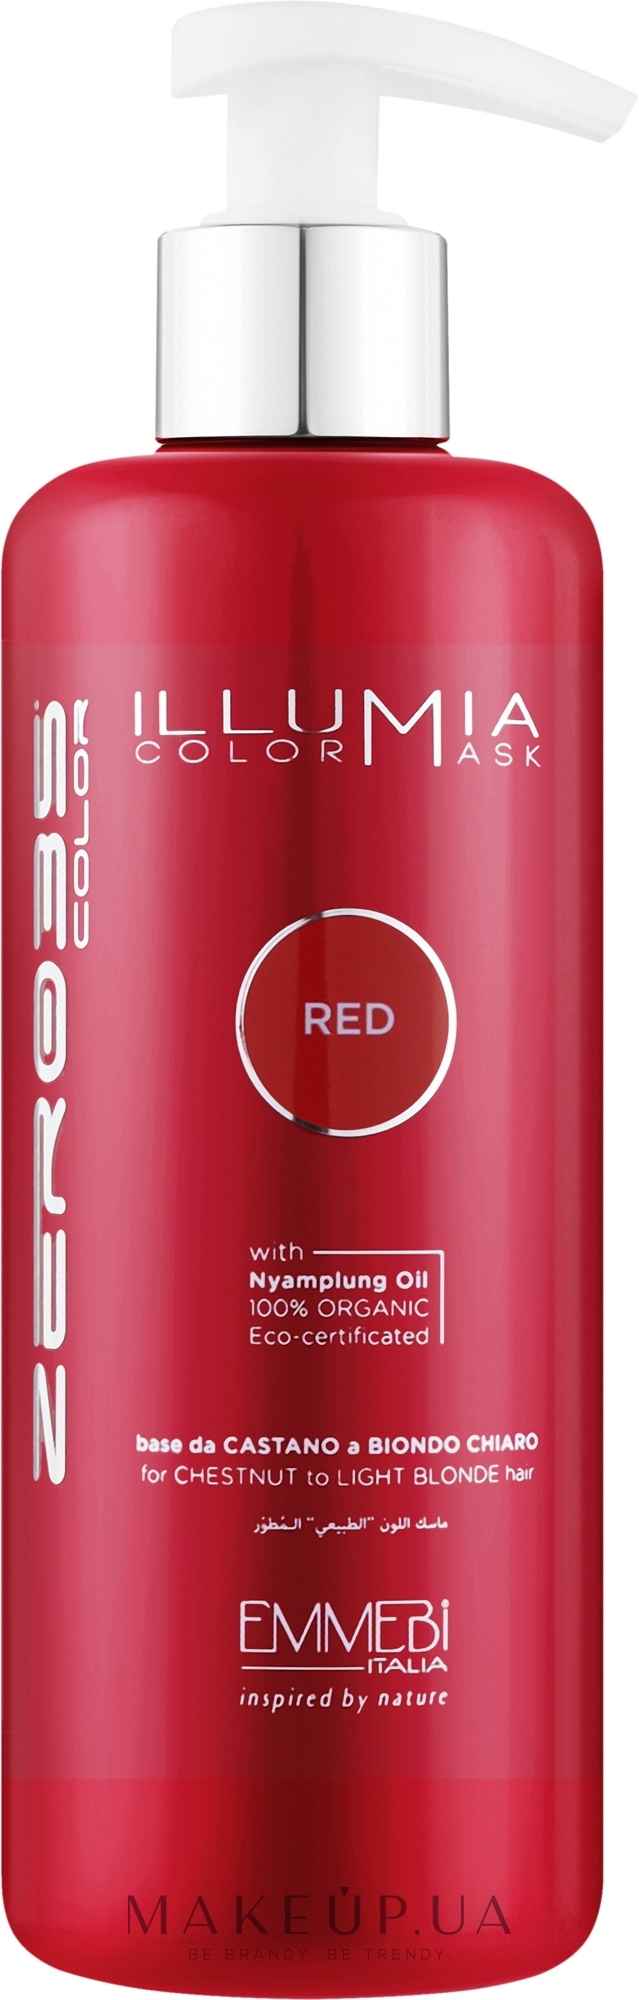 Тонувальна маска для волосся - Emmebi Italia Illumia Color Mask Red — фото 300ml